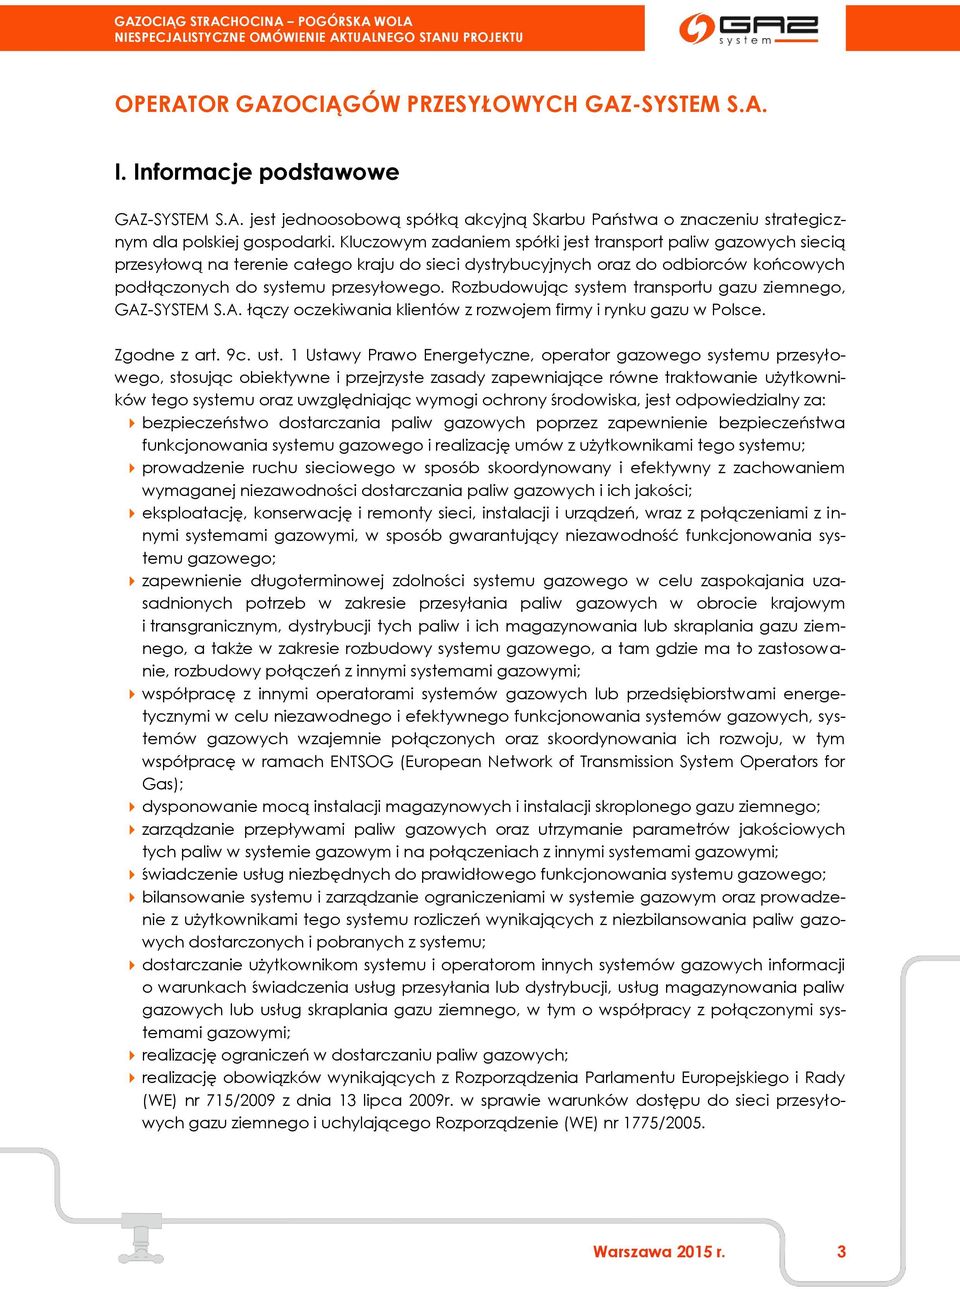 Rozbudowując system transportu gazu ziemnego, GAZ-SYSTEM S.A. łączy oczekiwania klientów z rozwojem firmy i rynku gazu w Polsce. Zgodne z art. 9c. ust.